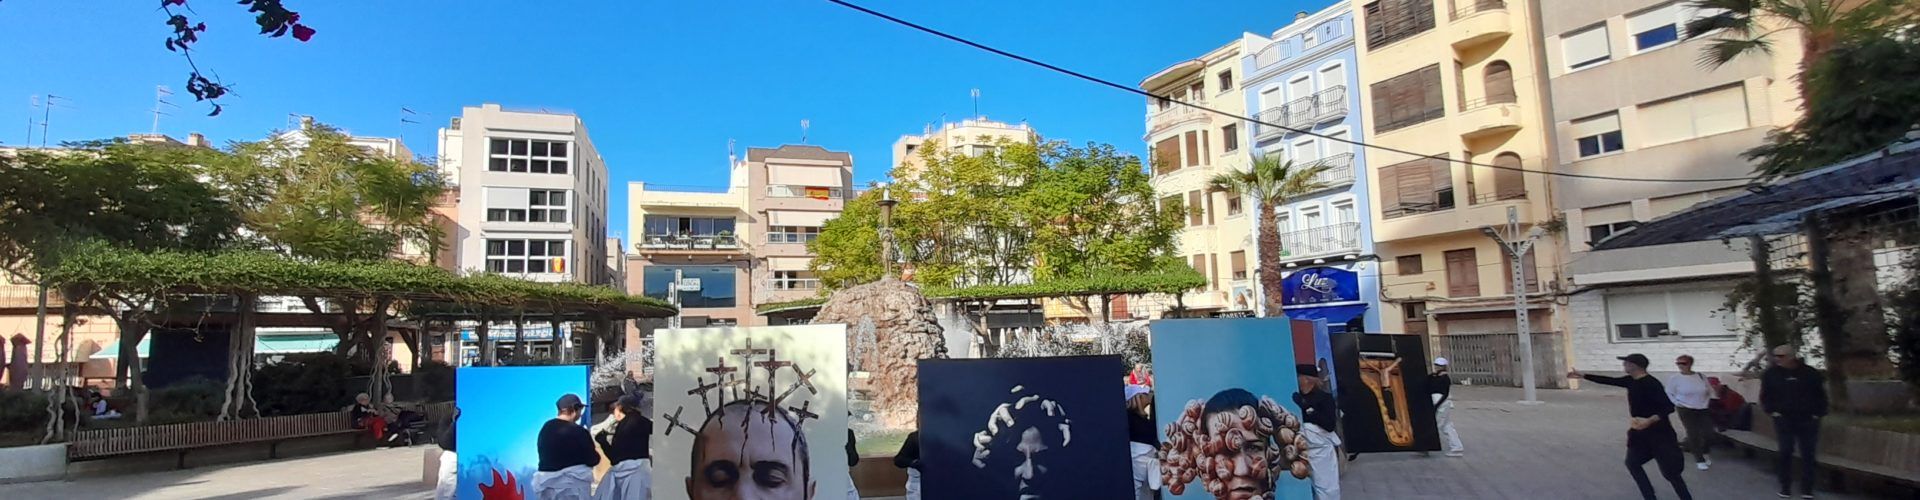 Vinaròs recorda Carles Santos amb una performance pels carrers